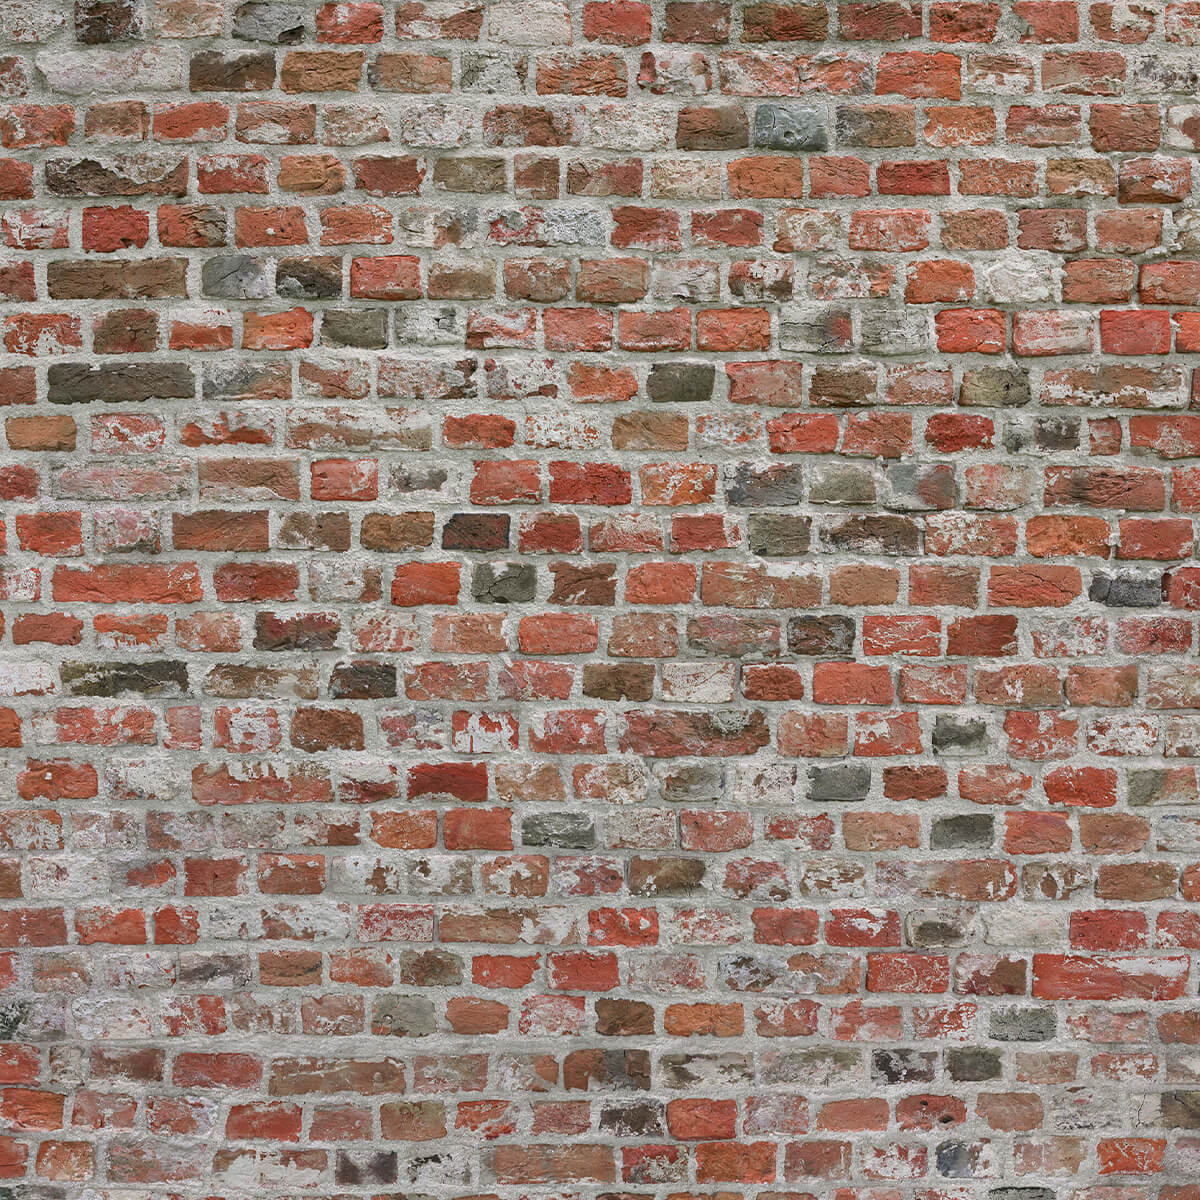 Brick wall restored